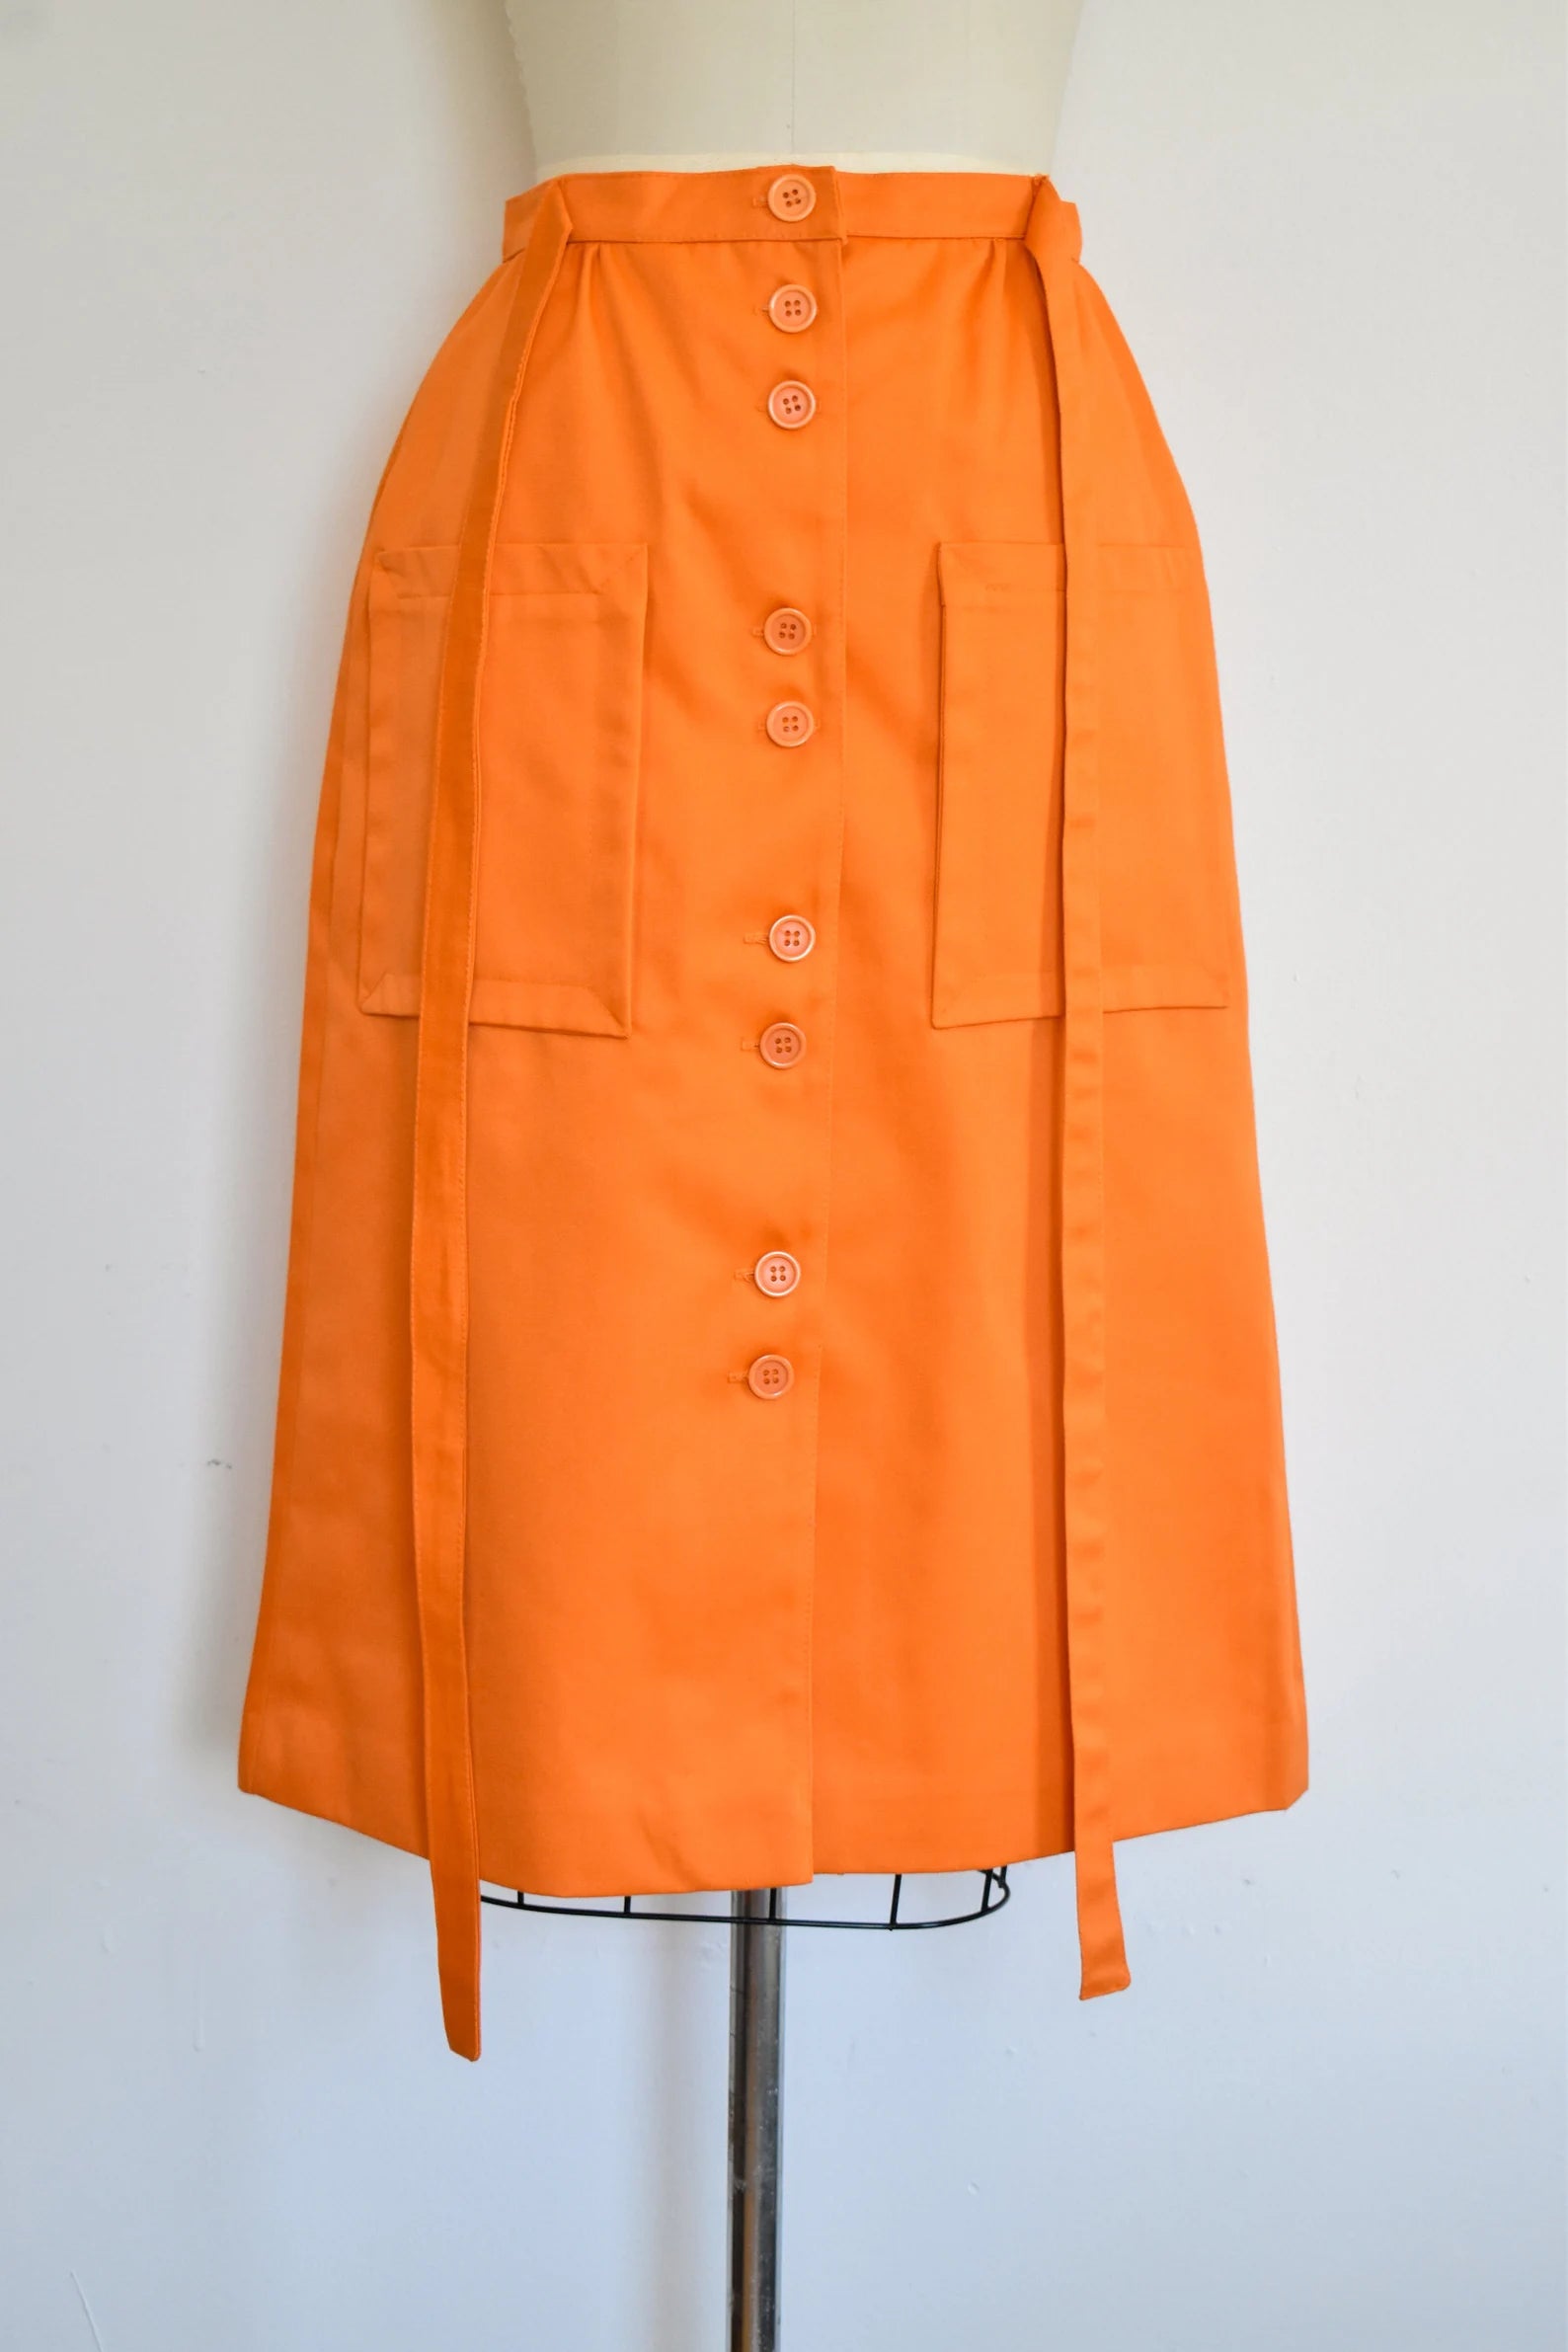 Vintage 1970s/80s Orange Button Front Twill Skirt with Waist Tie, Miss Renfrew by Holt Renfrew, Waist 29"